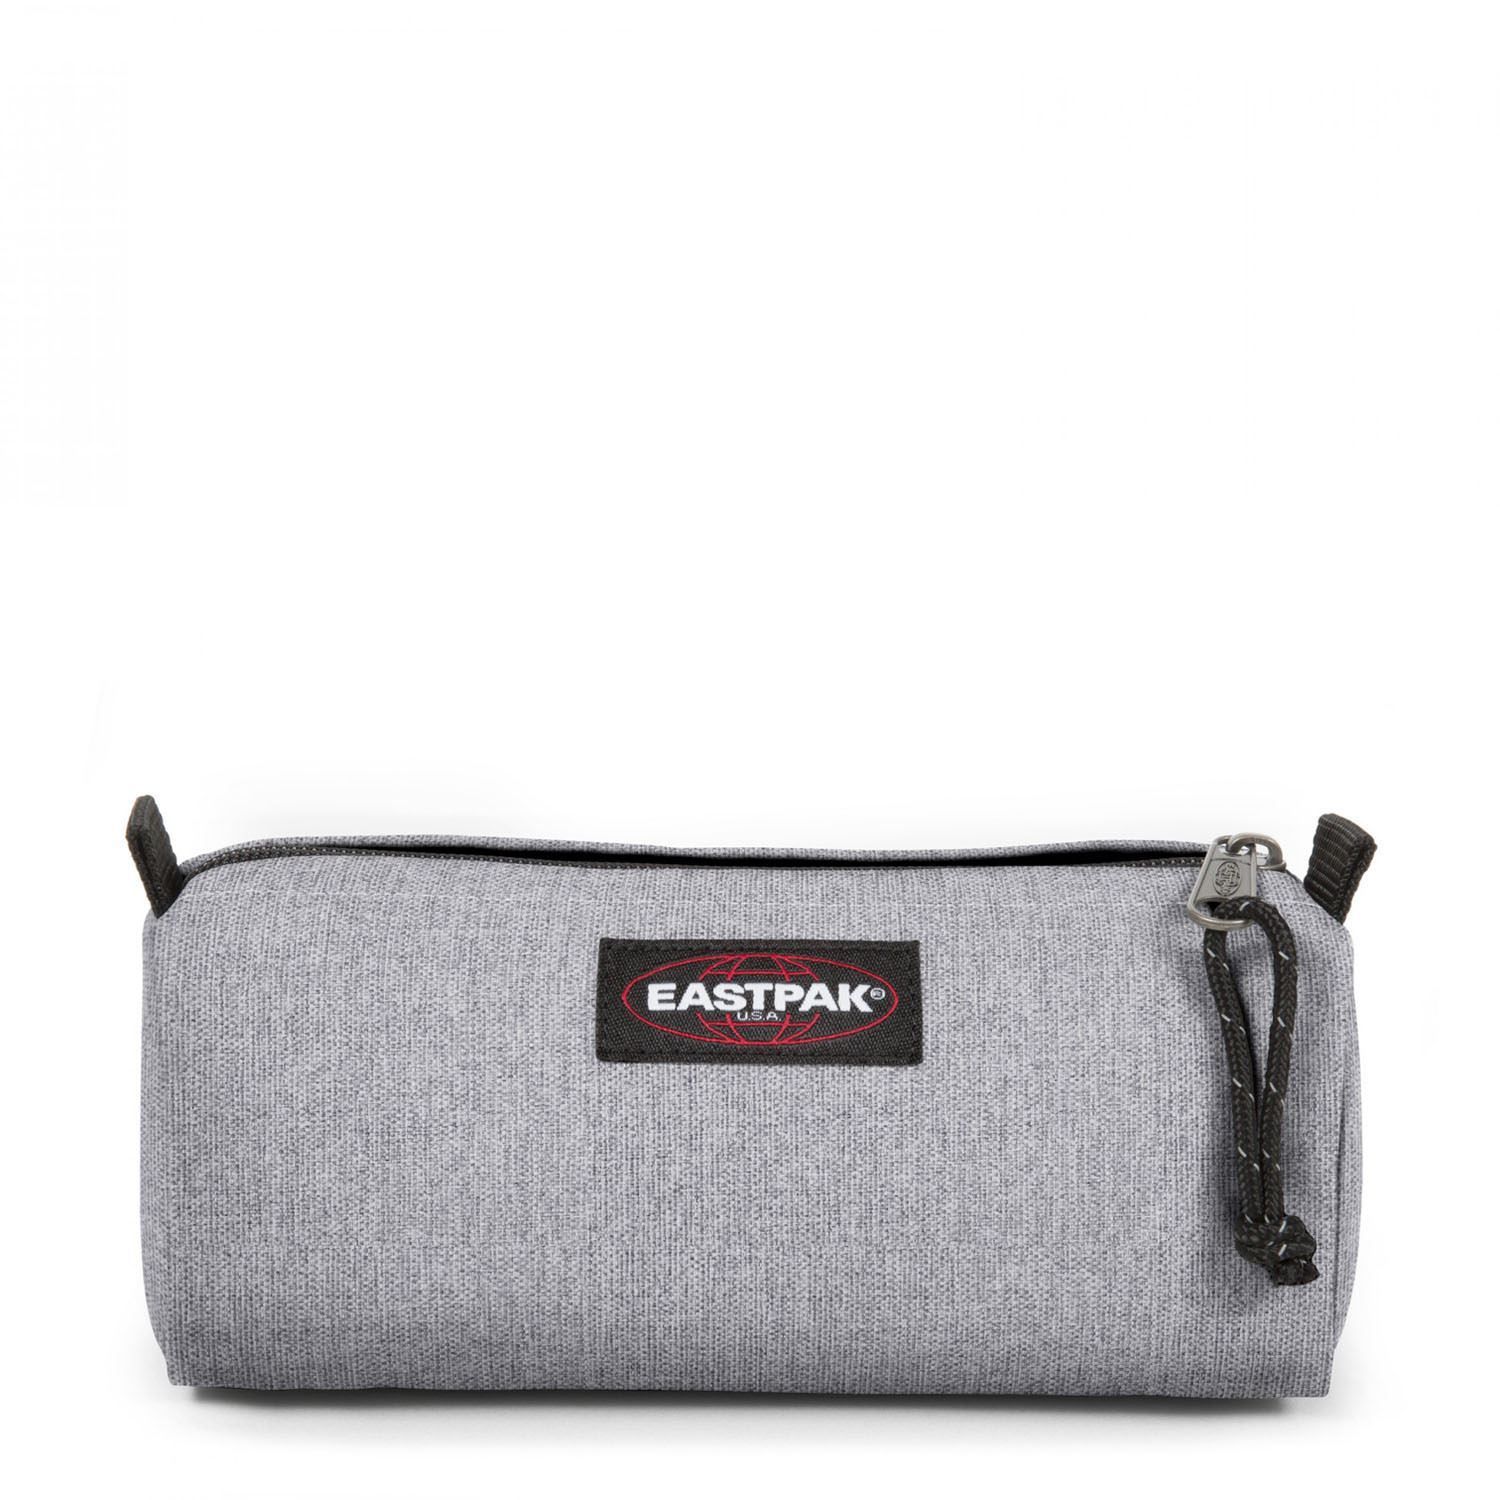 EASTPAK Benchmark L - Trousse 1 compartiment + 1 poche zippée